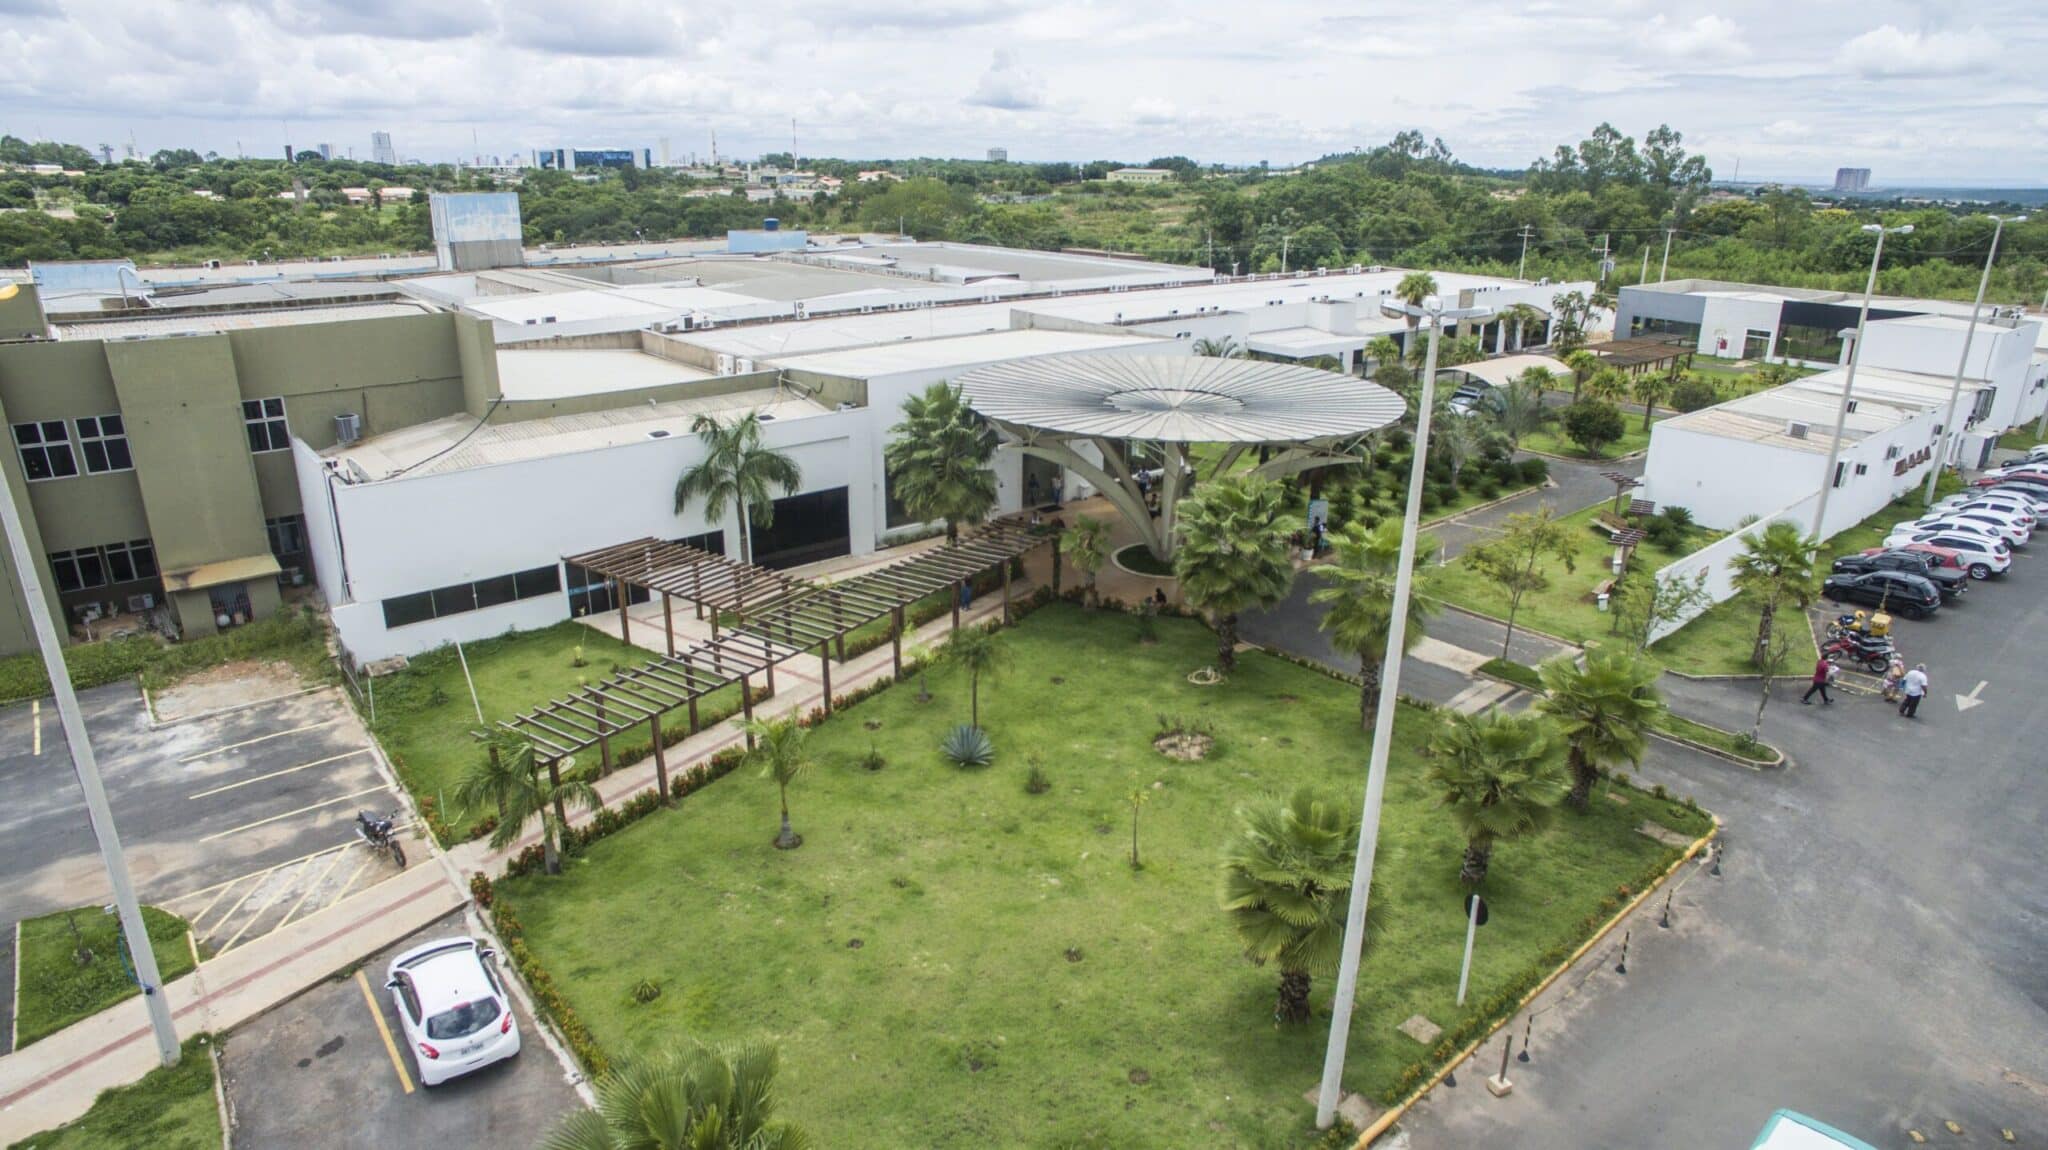 Hospital de Câncer de Mato Grosso